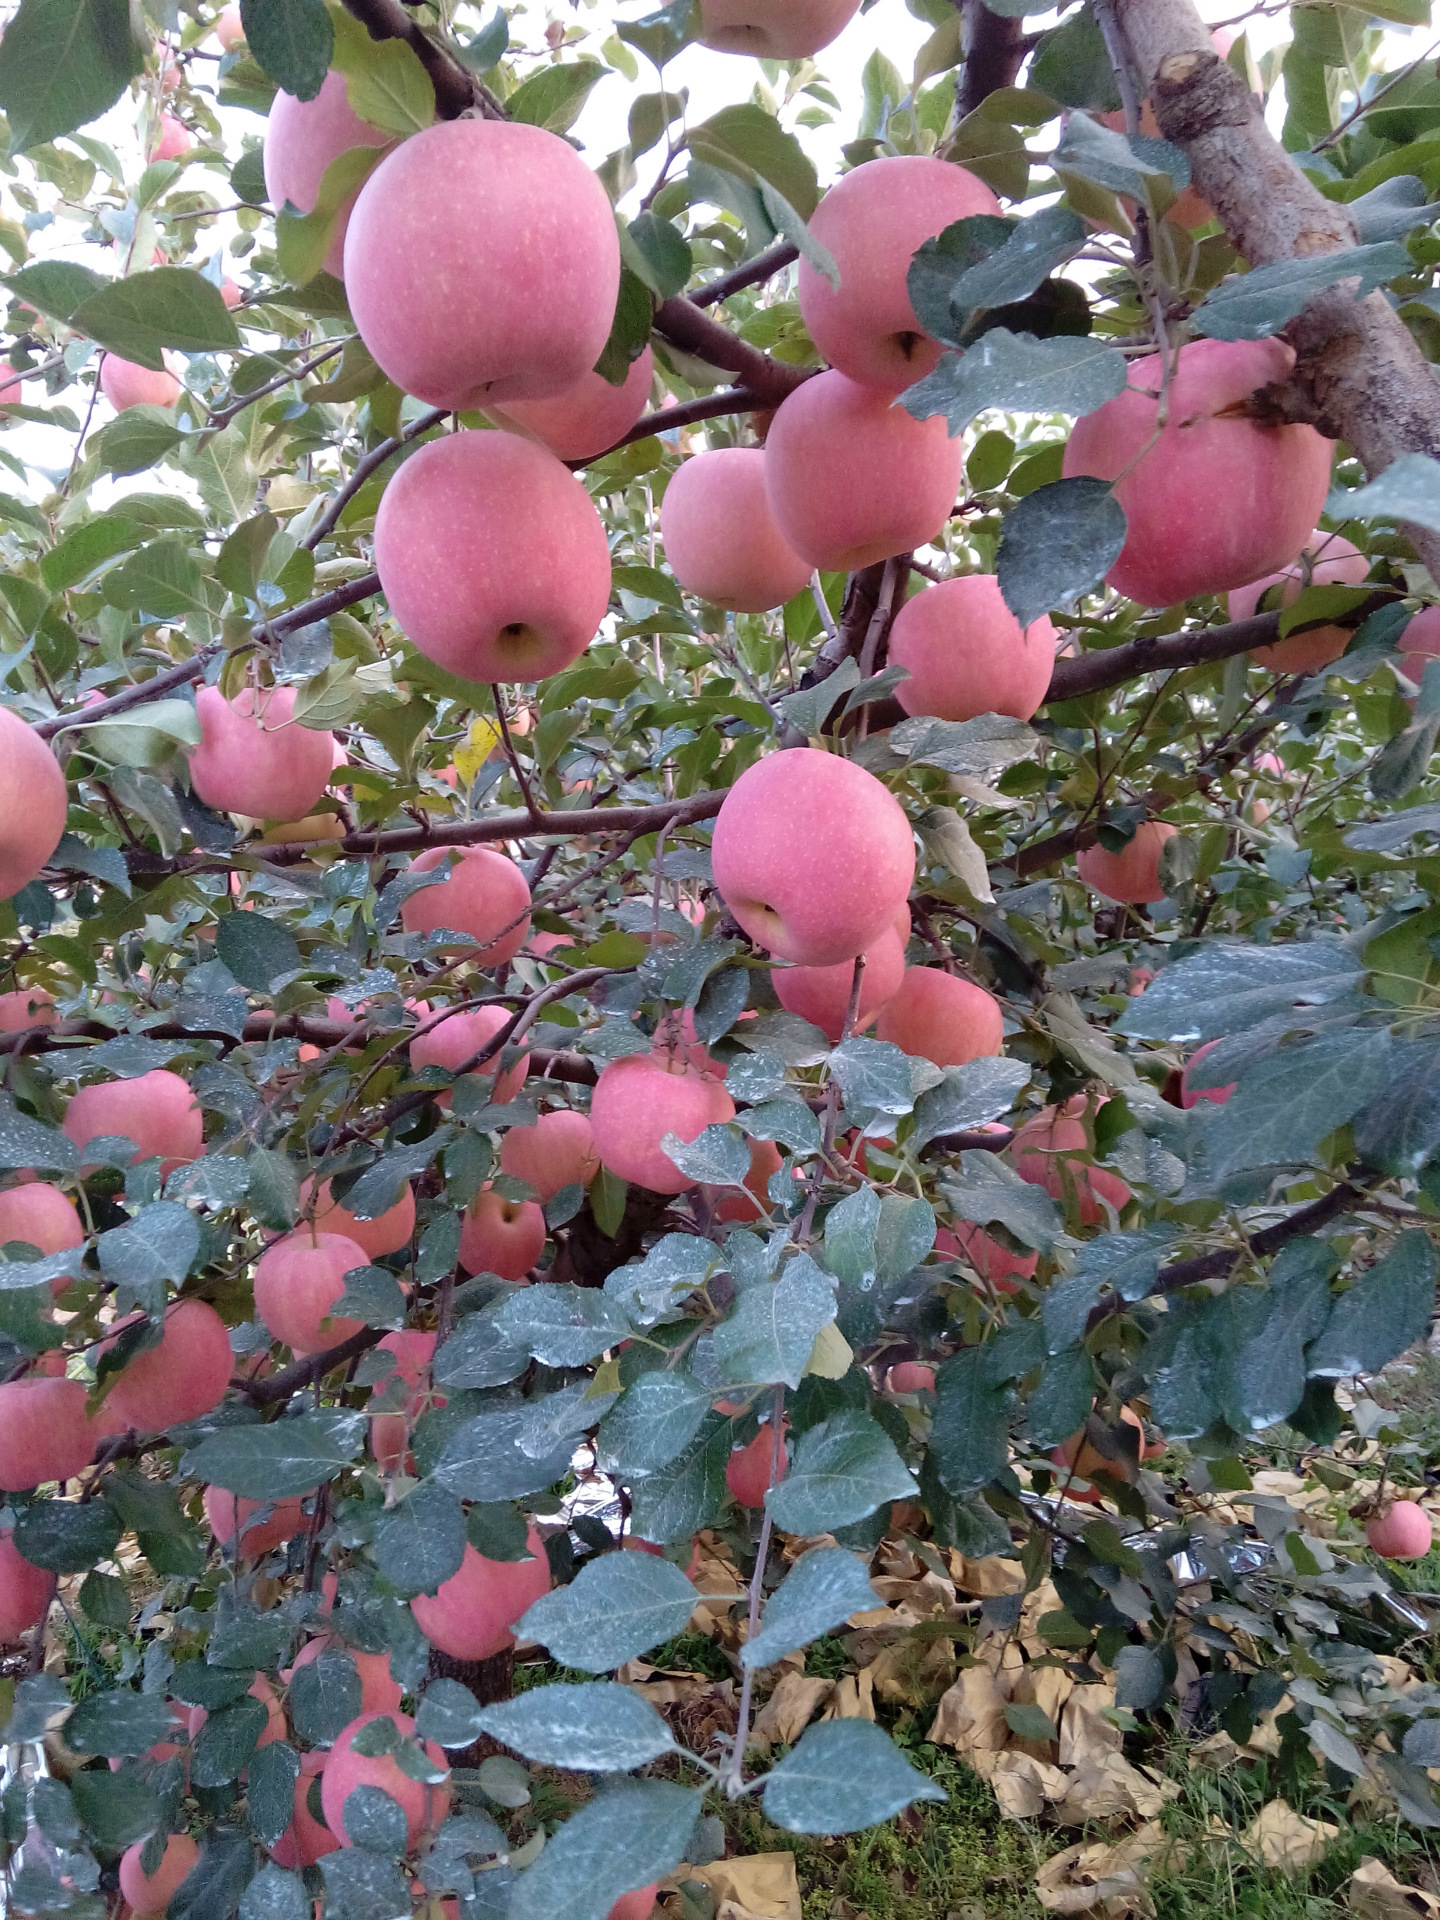 真正的绿色苹果,无农药残留,纯有机肥,一棵树30kg有机肥,自家果园